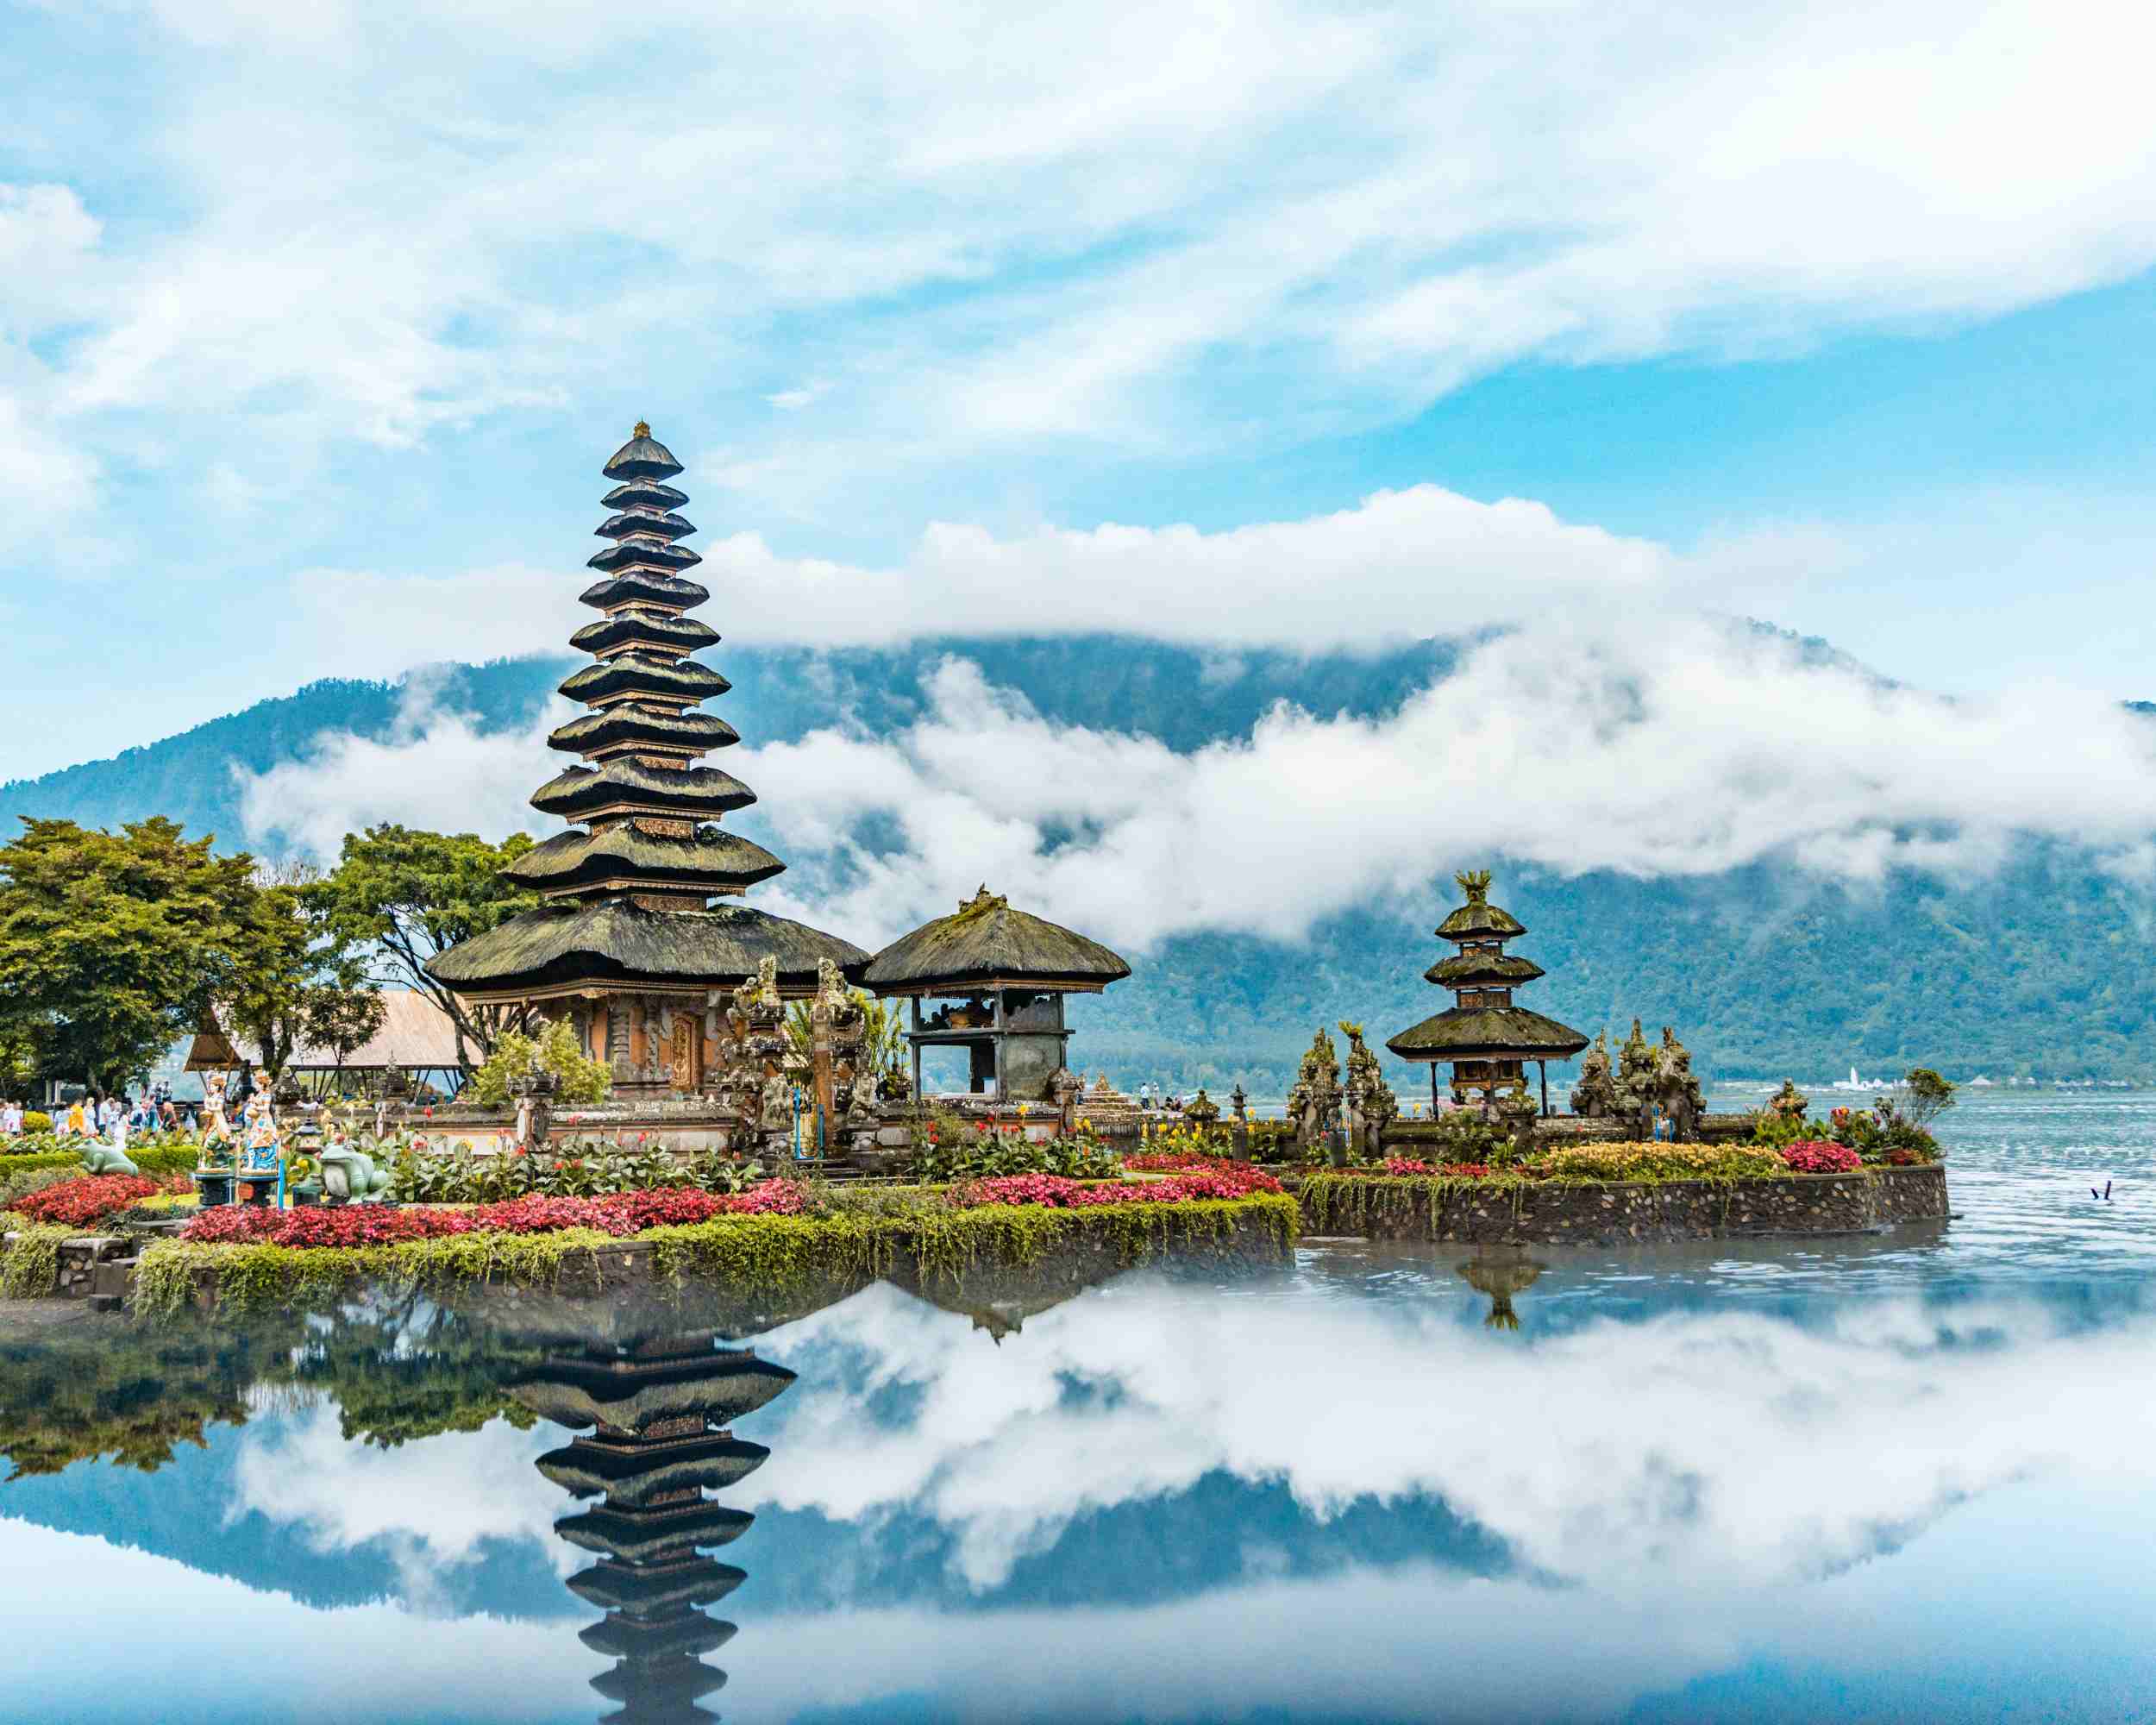 Kan Ik Momenteel Reizen Naar Indonesië?